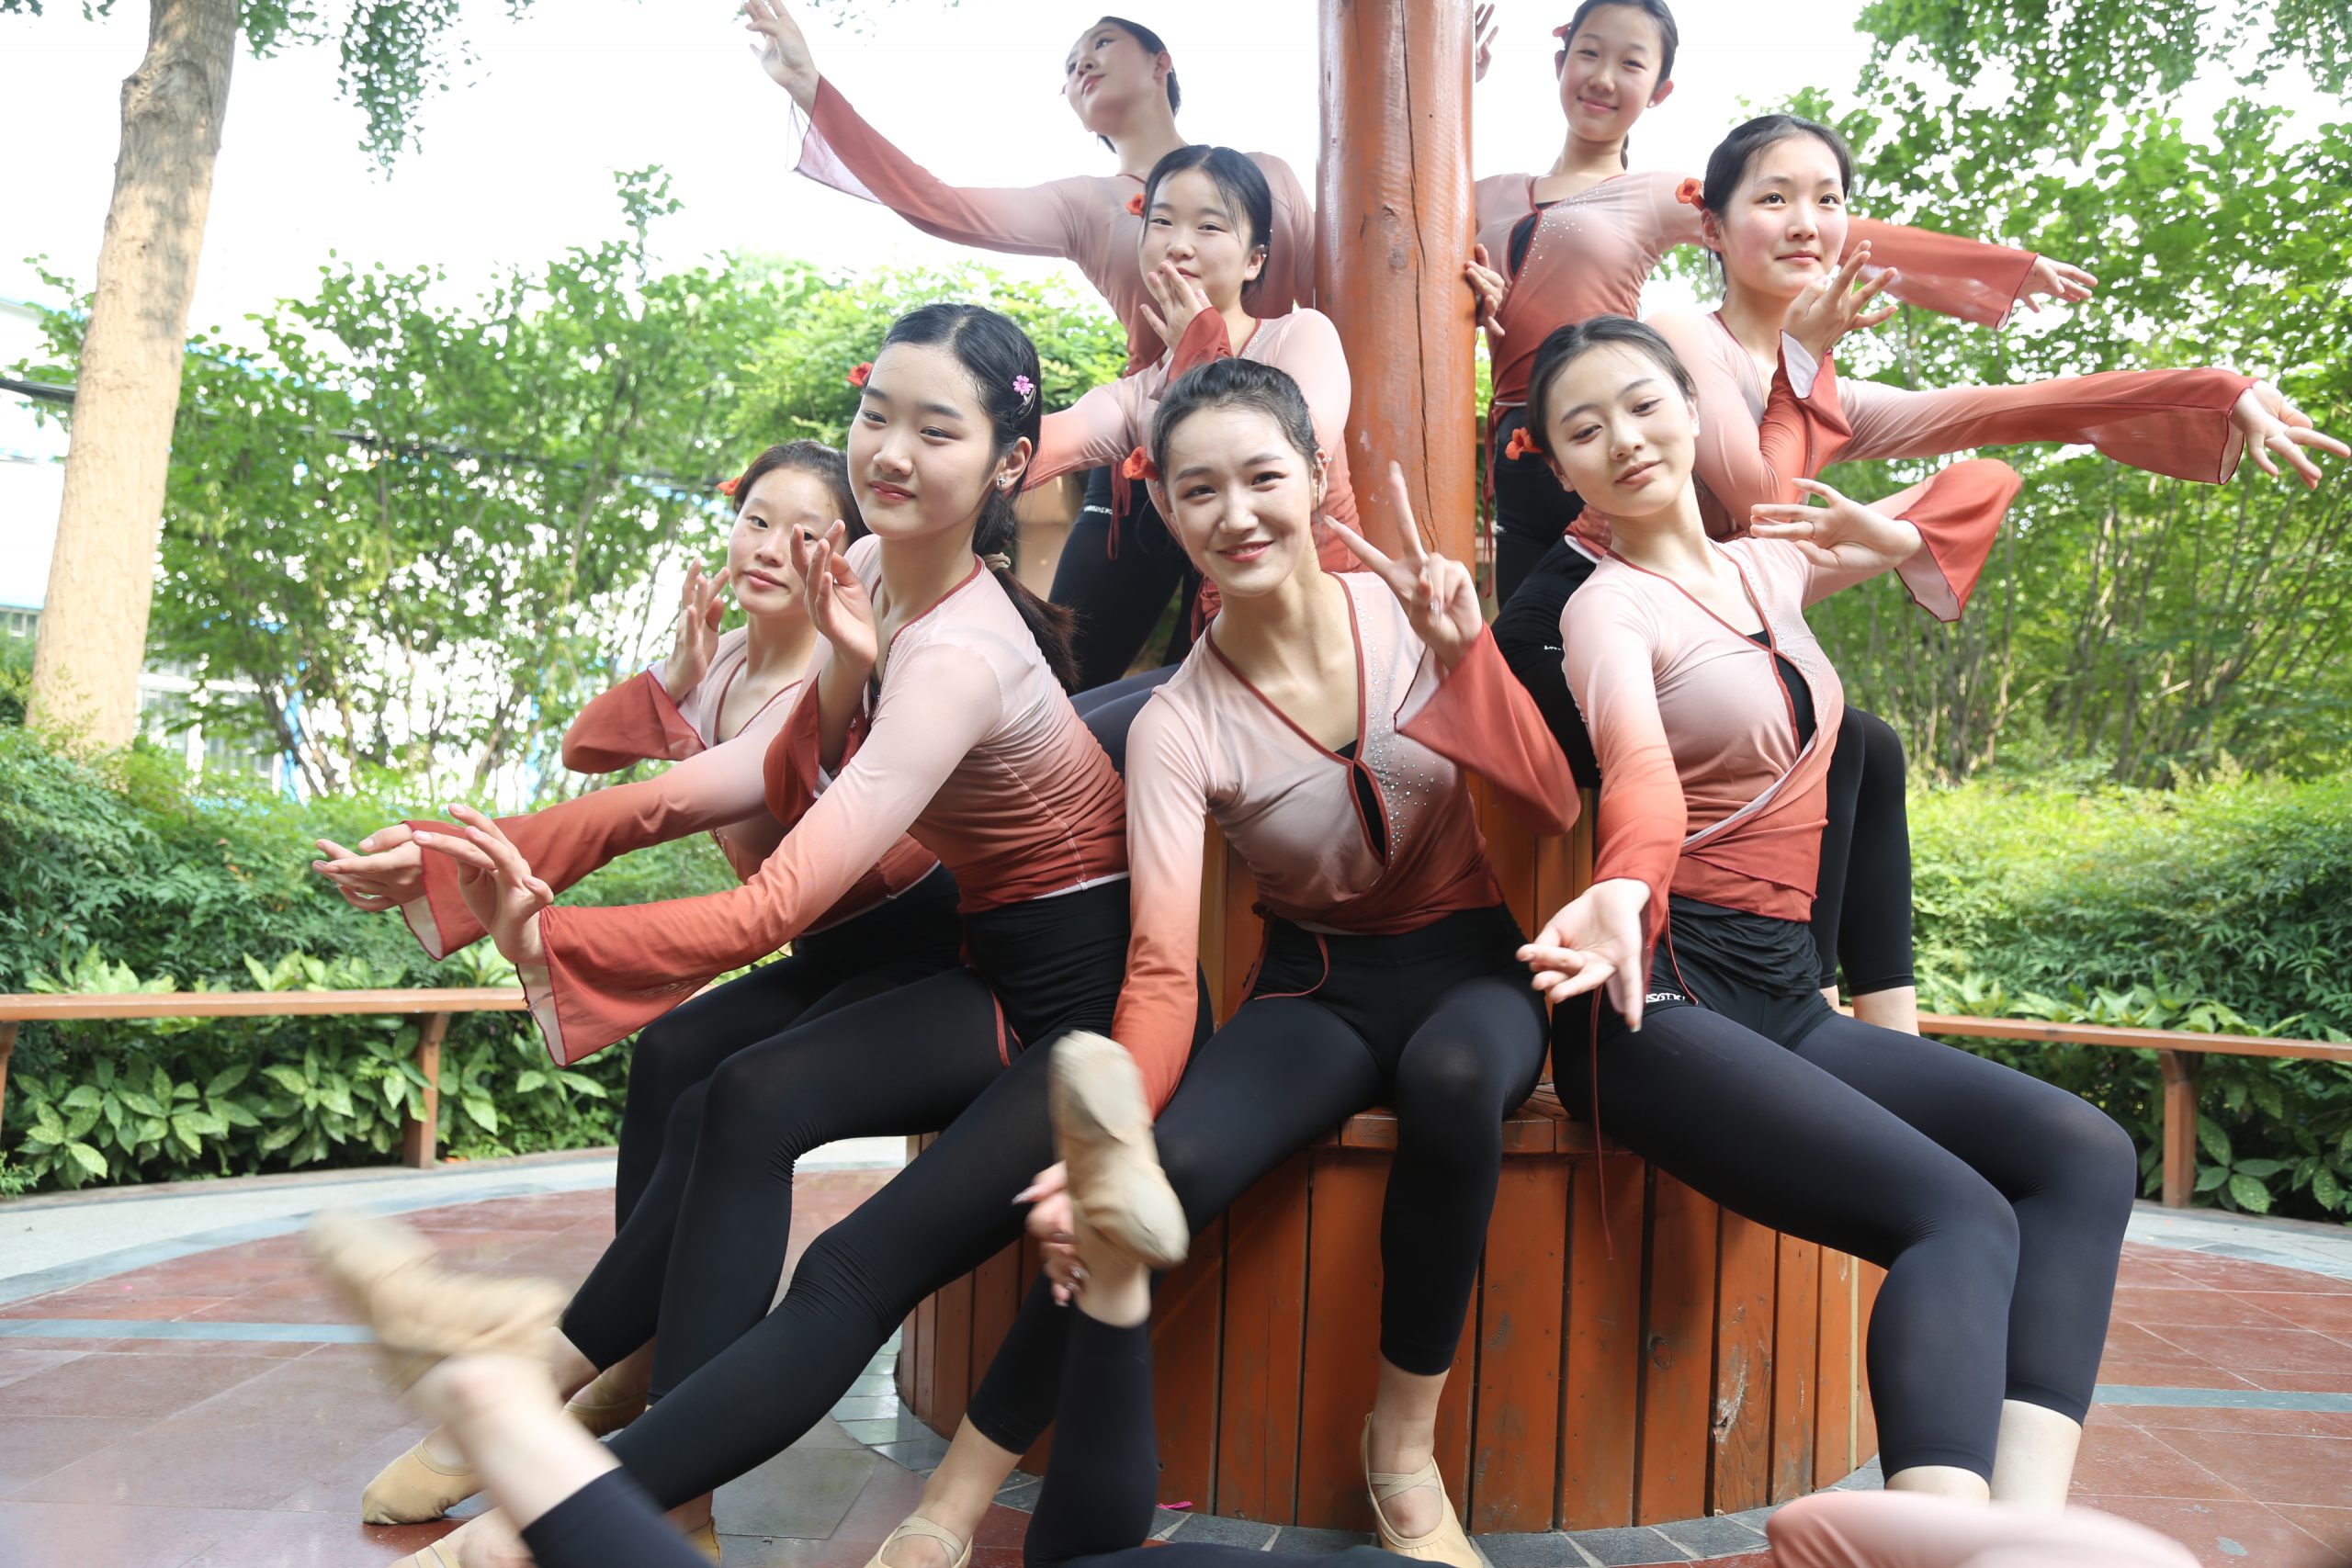 舞蹈表演专业的同学们在校园拍照留念 (http://www.xifumi.com/) 校内新闻 第4张